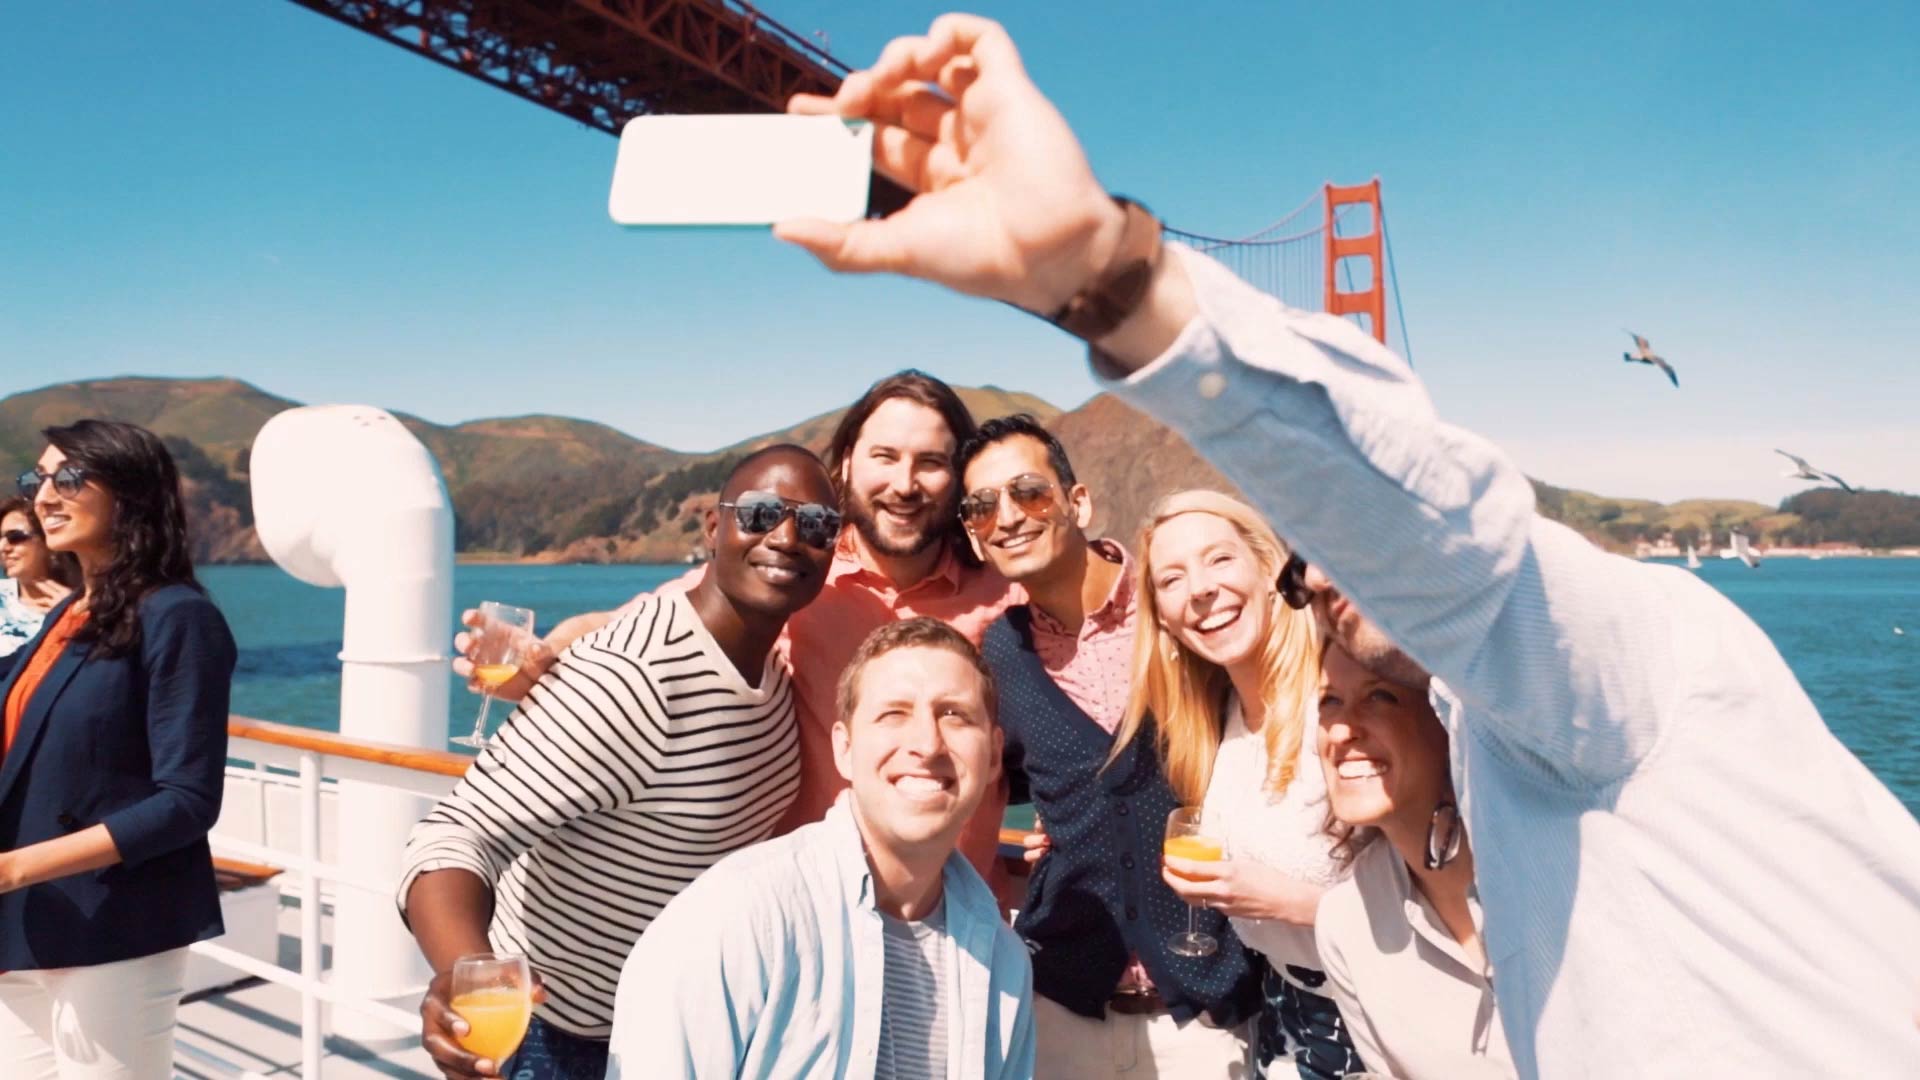 Selfie dengan Jambatan Golden Gate di latar belakang